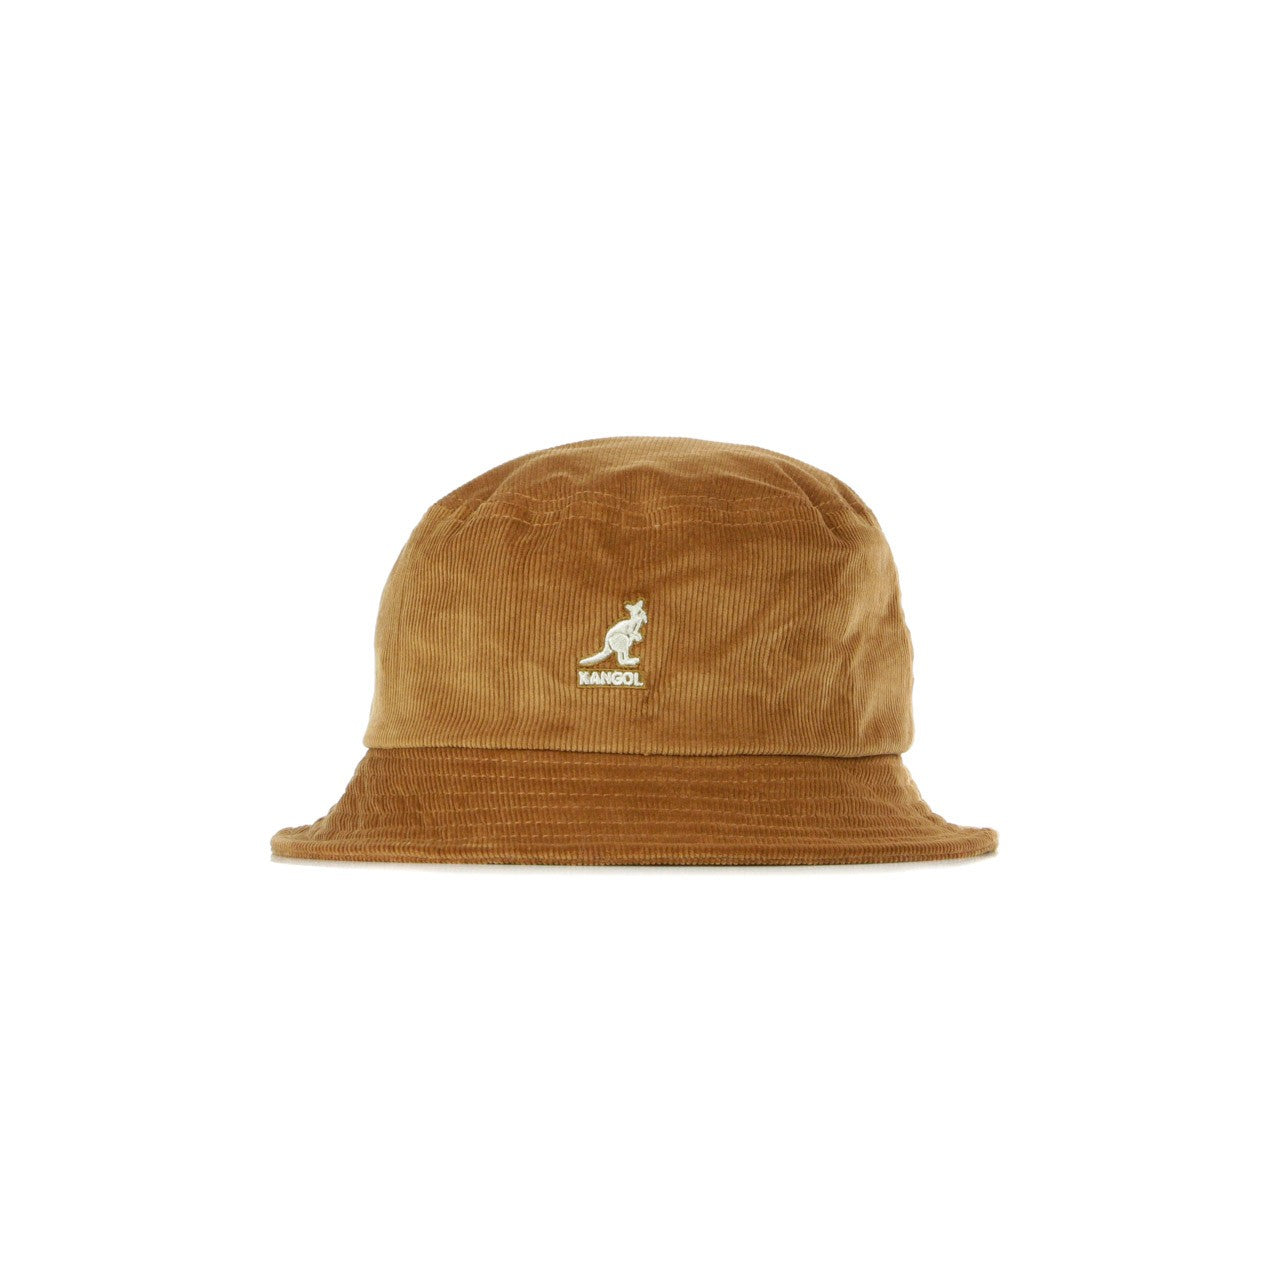 Men's Cord Bucket Wood Fisherman Hat